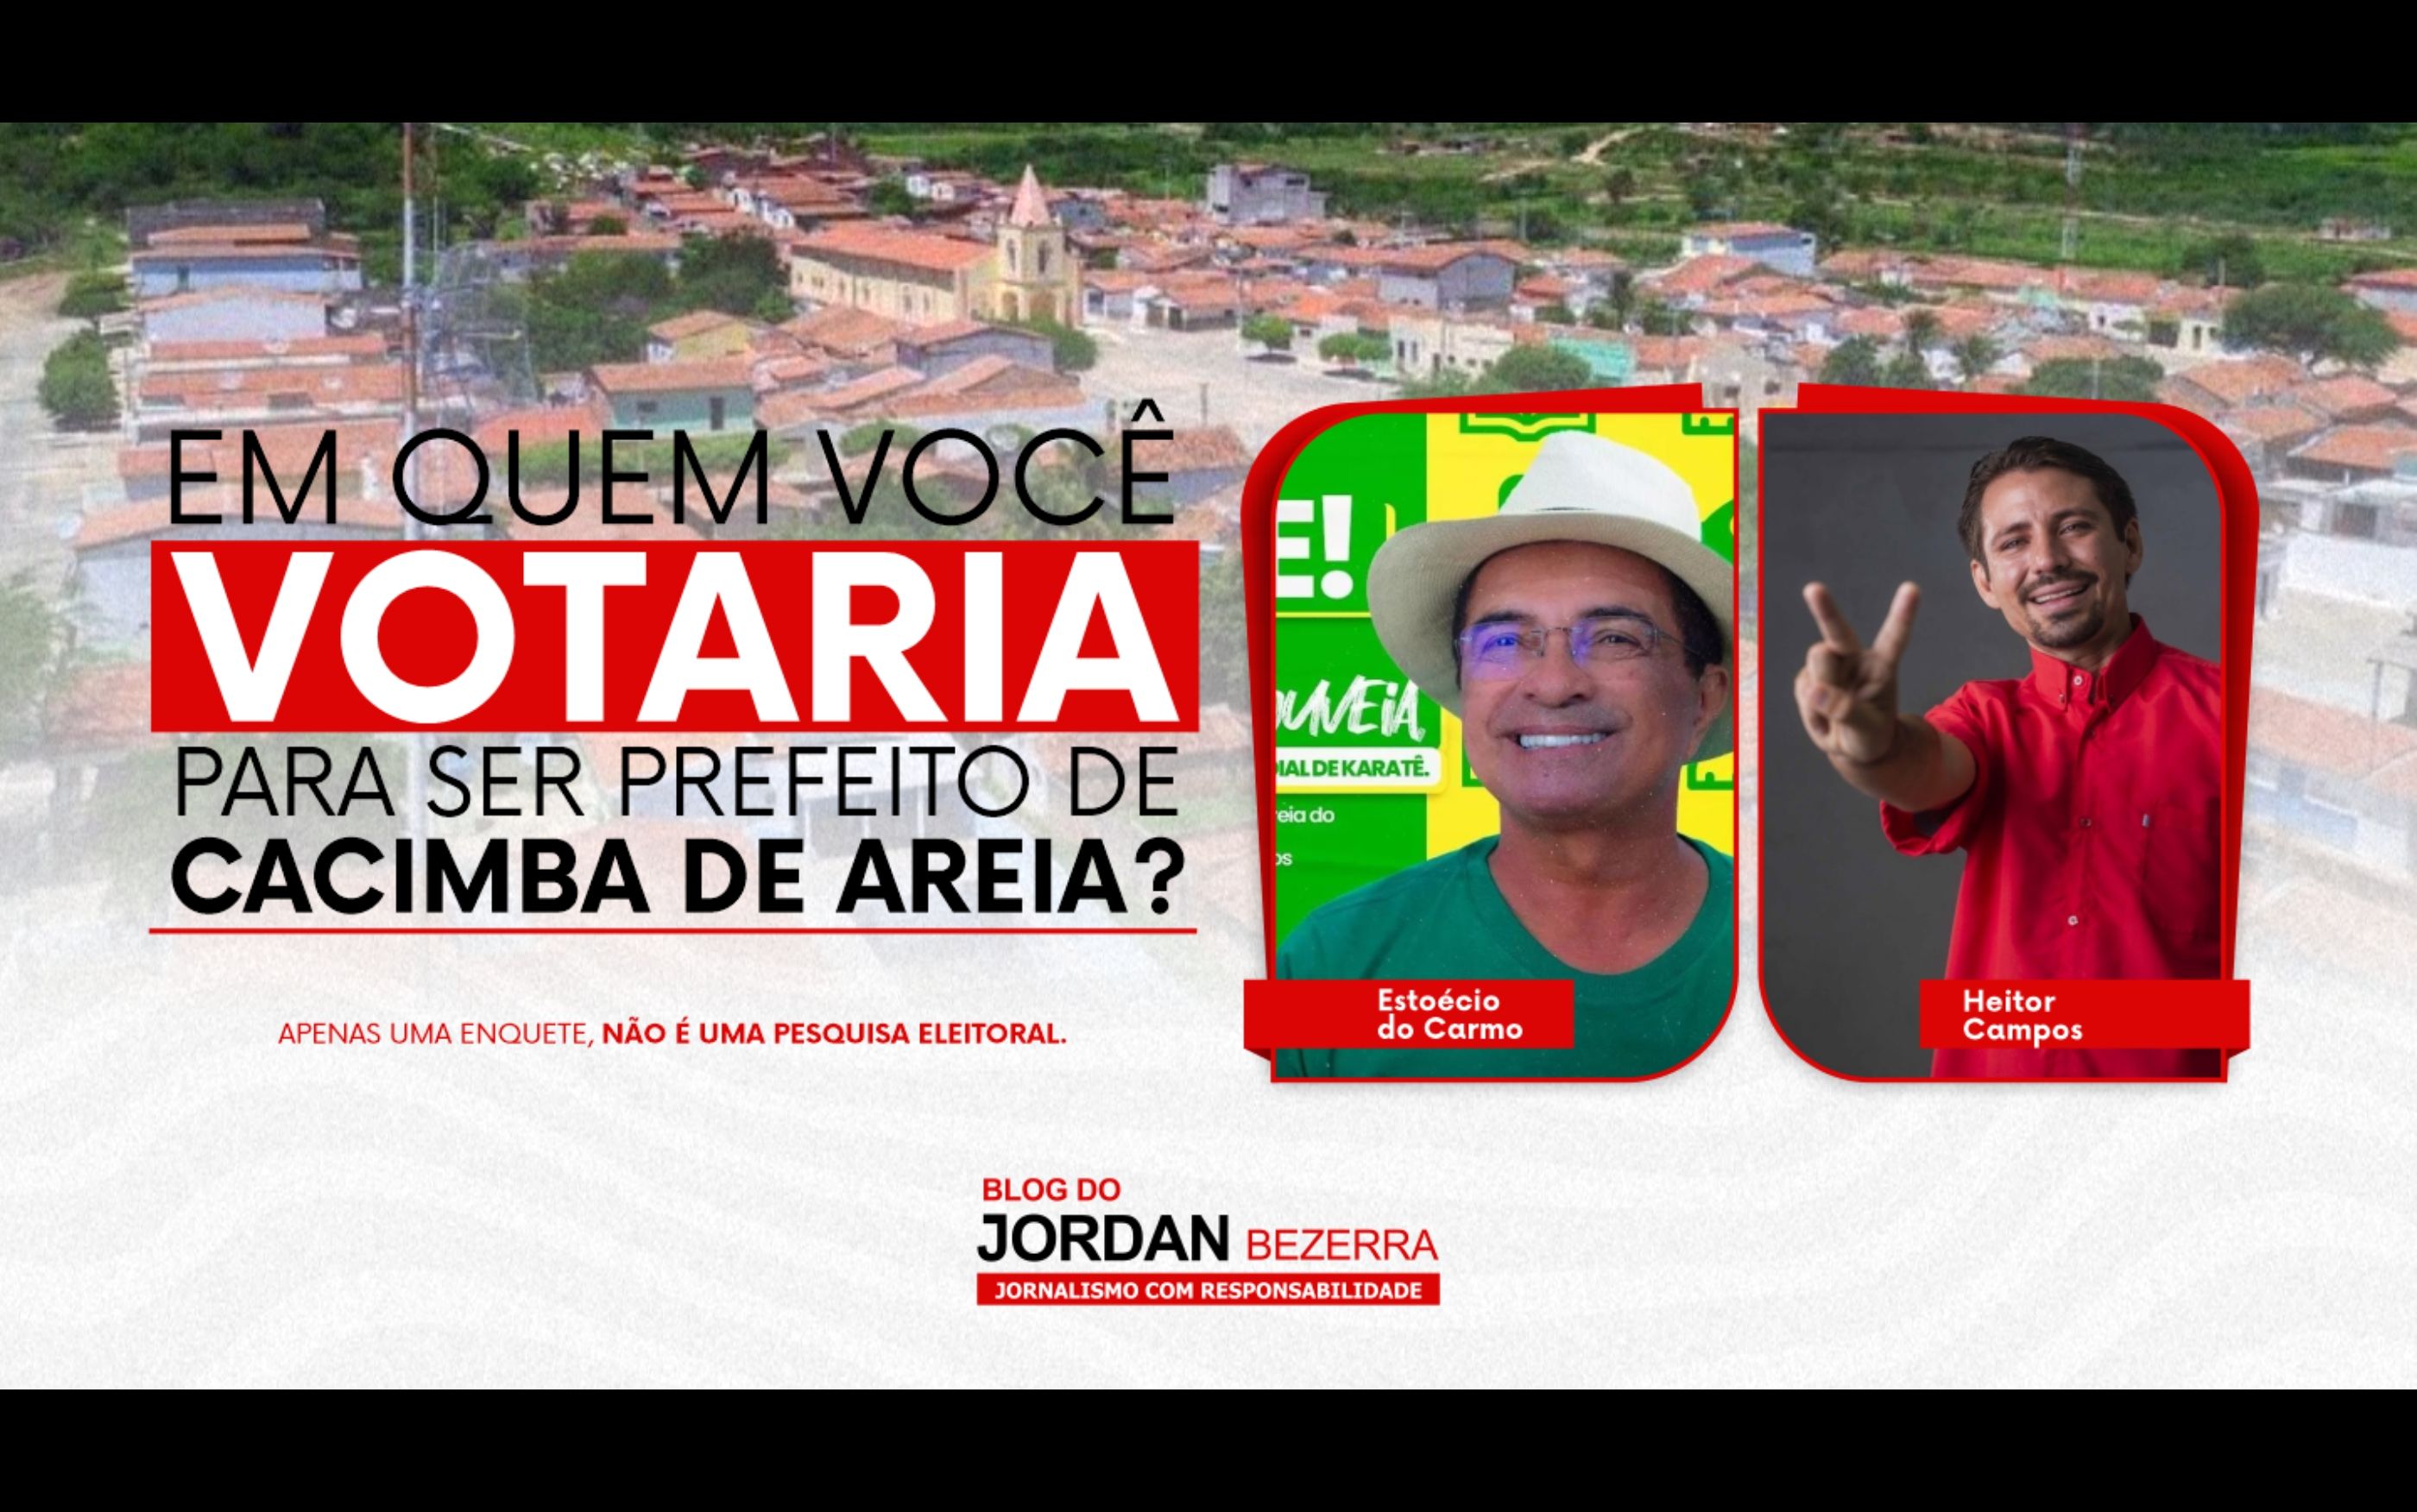 Vote na enquete: quem será próximo prefeito de Cacimba de Areia, Estoécio ou Heitor?